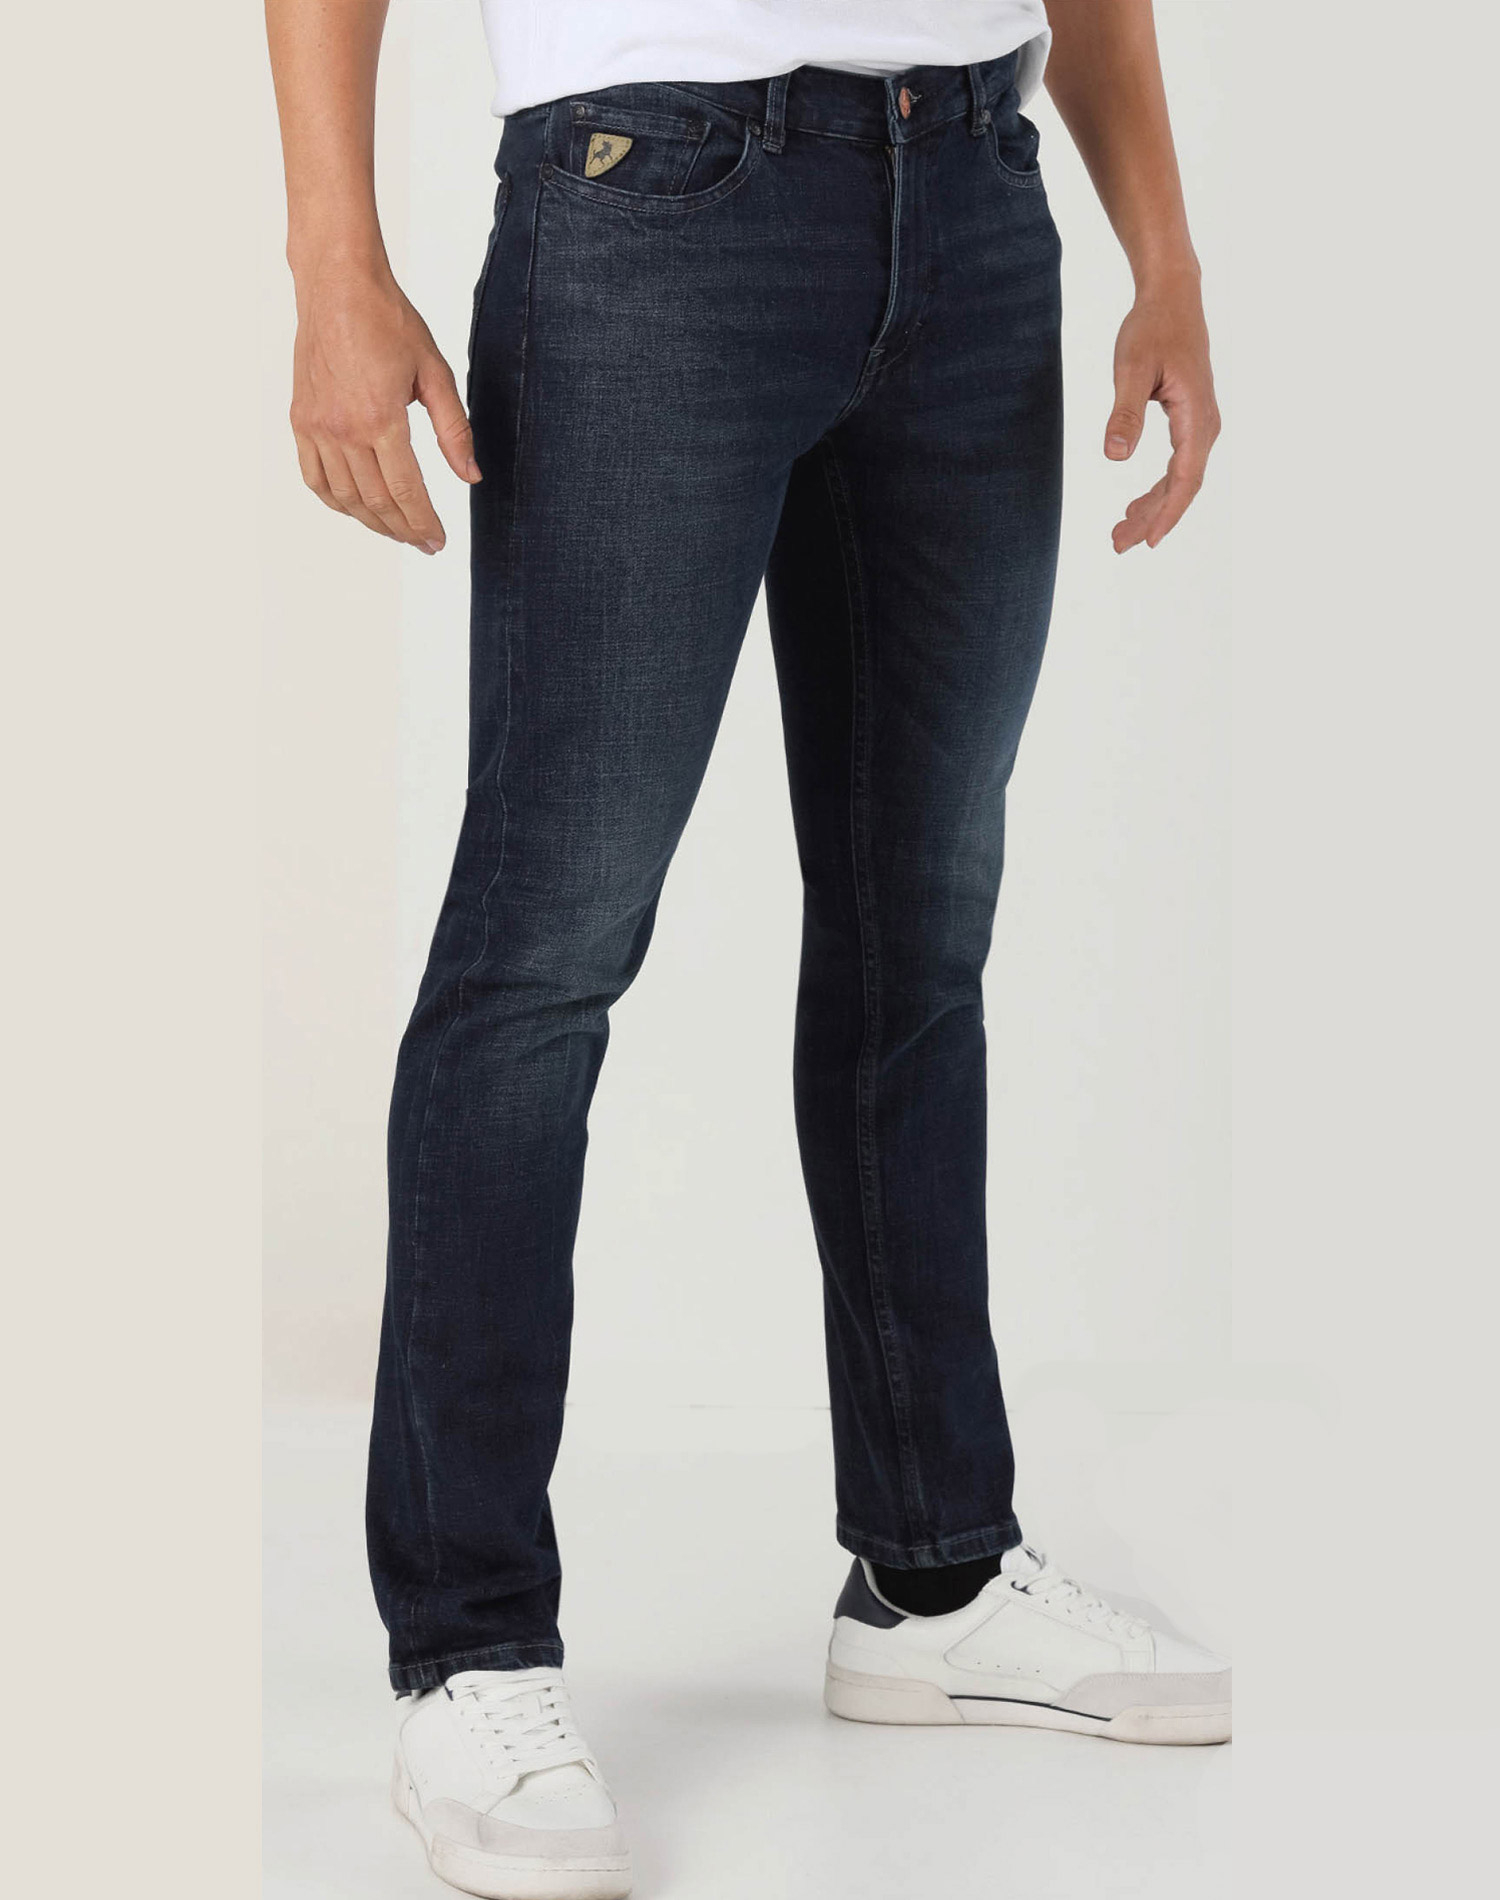 Lois pantalones vaqueros de hombre Robin comfort slim 10191/975 azul negro